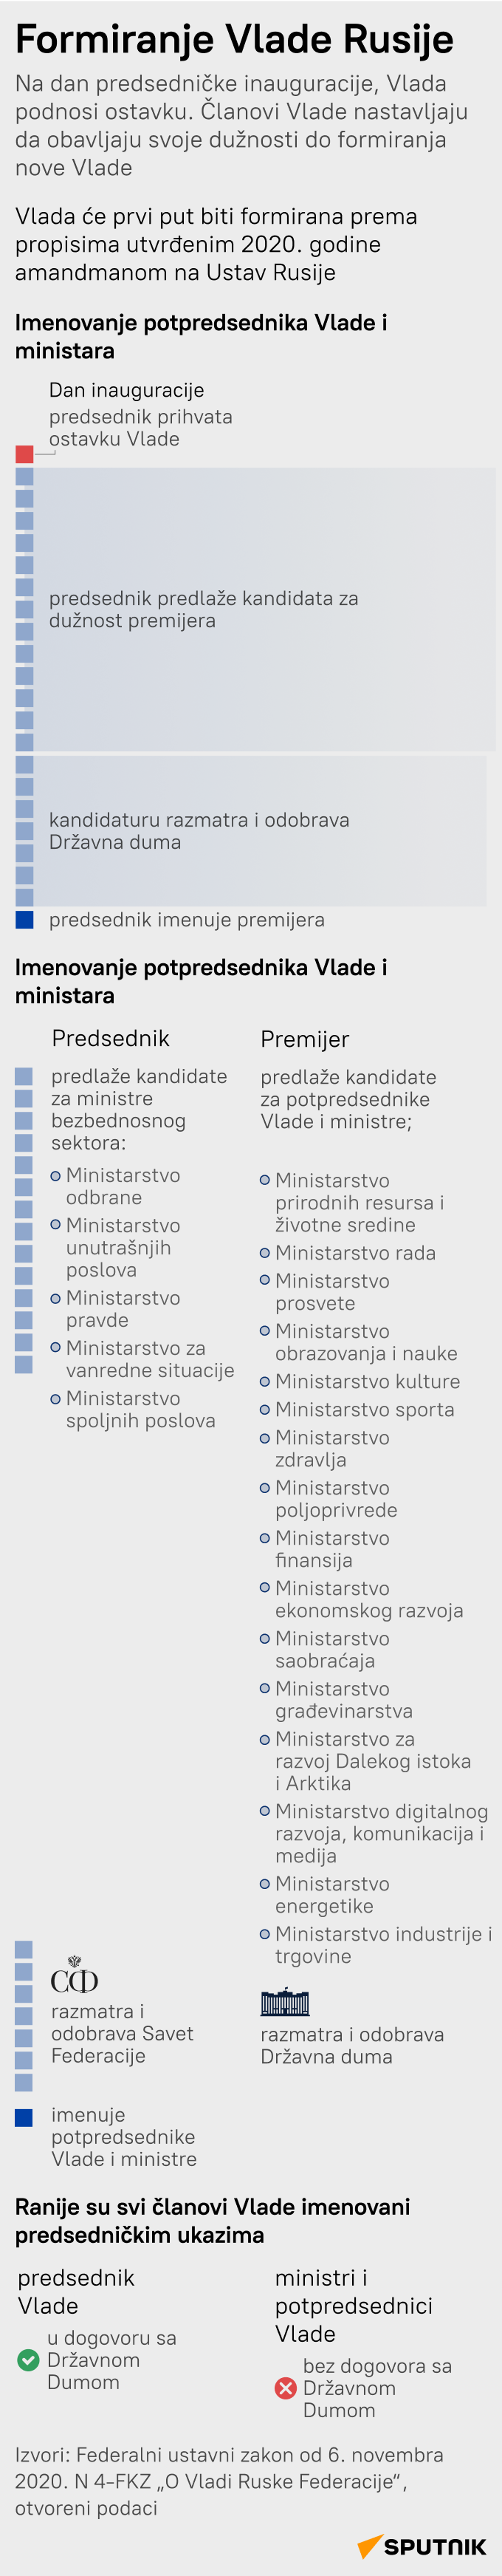 Formiranje vlade Ruske Federacije - Sputnik Srbija